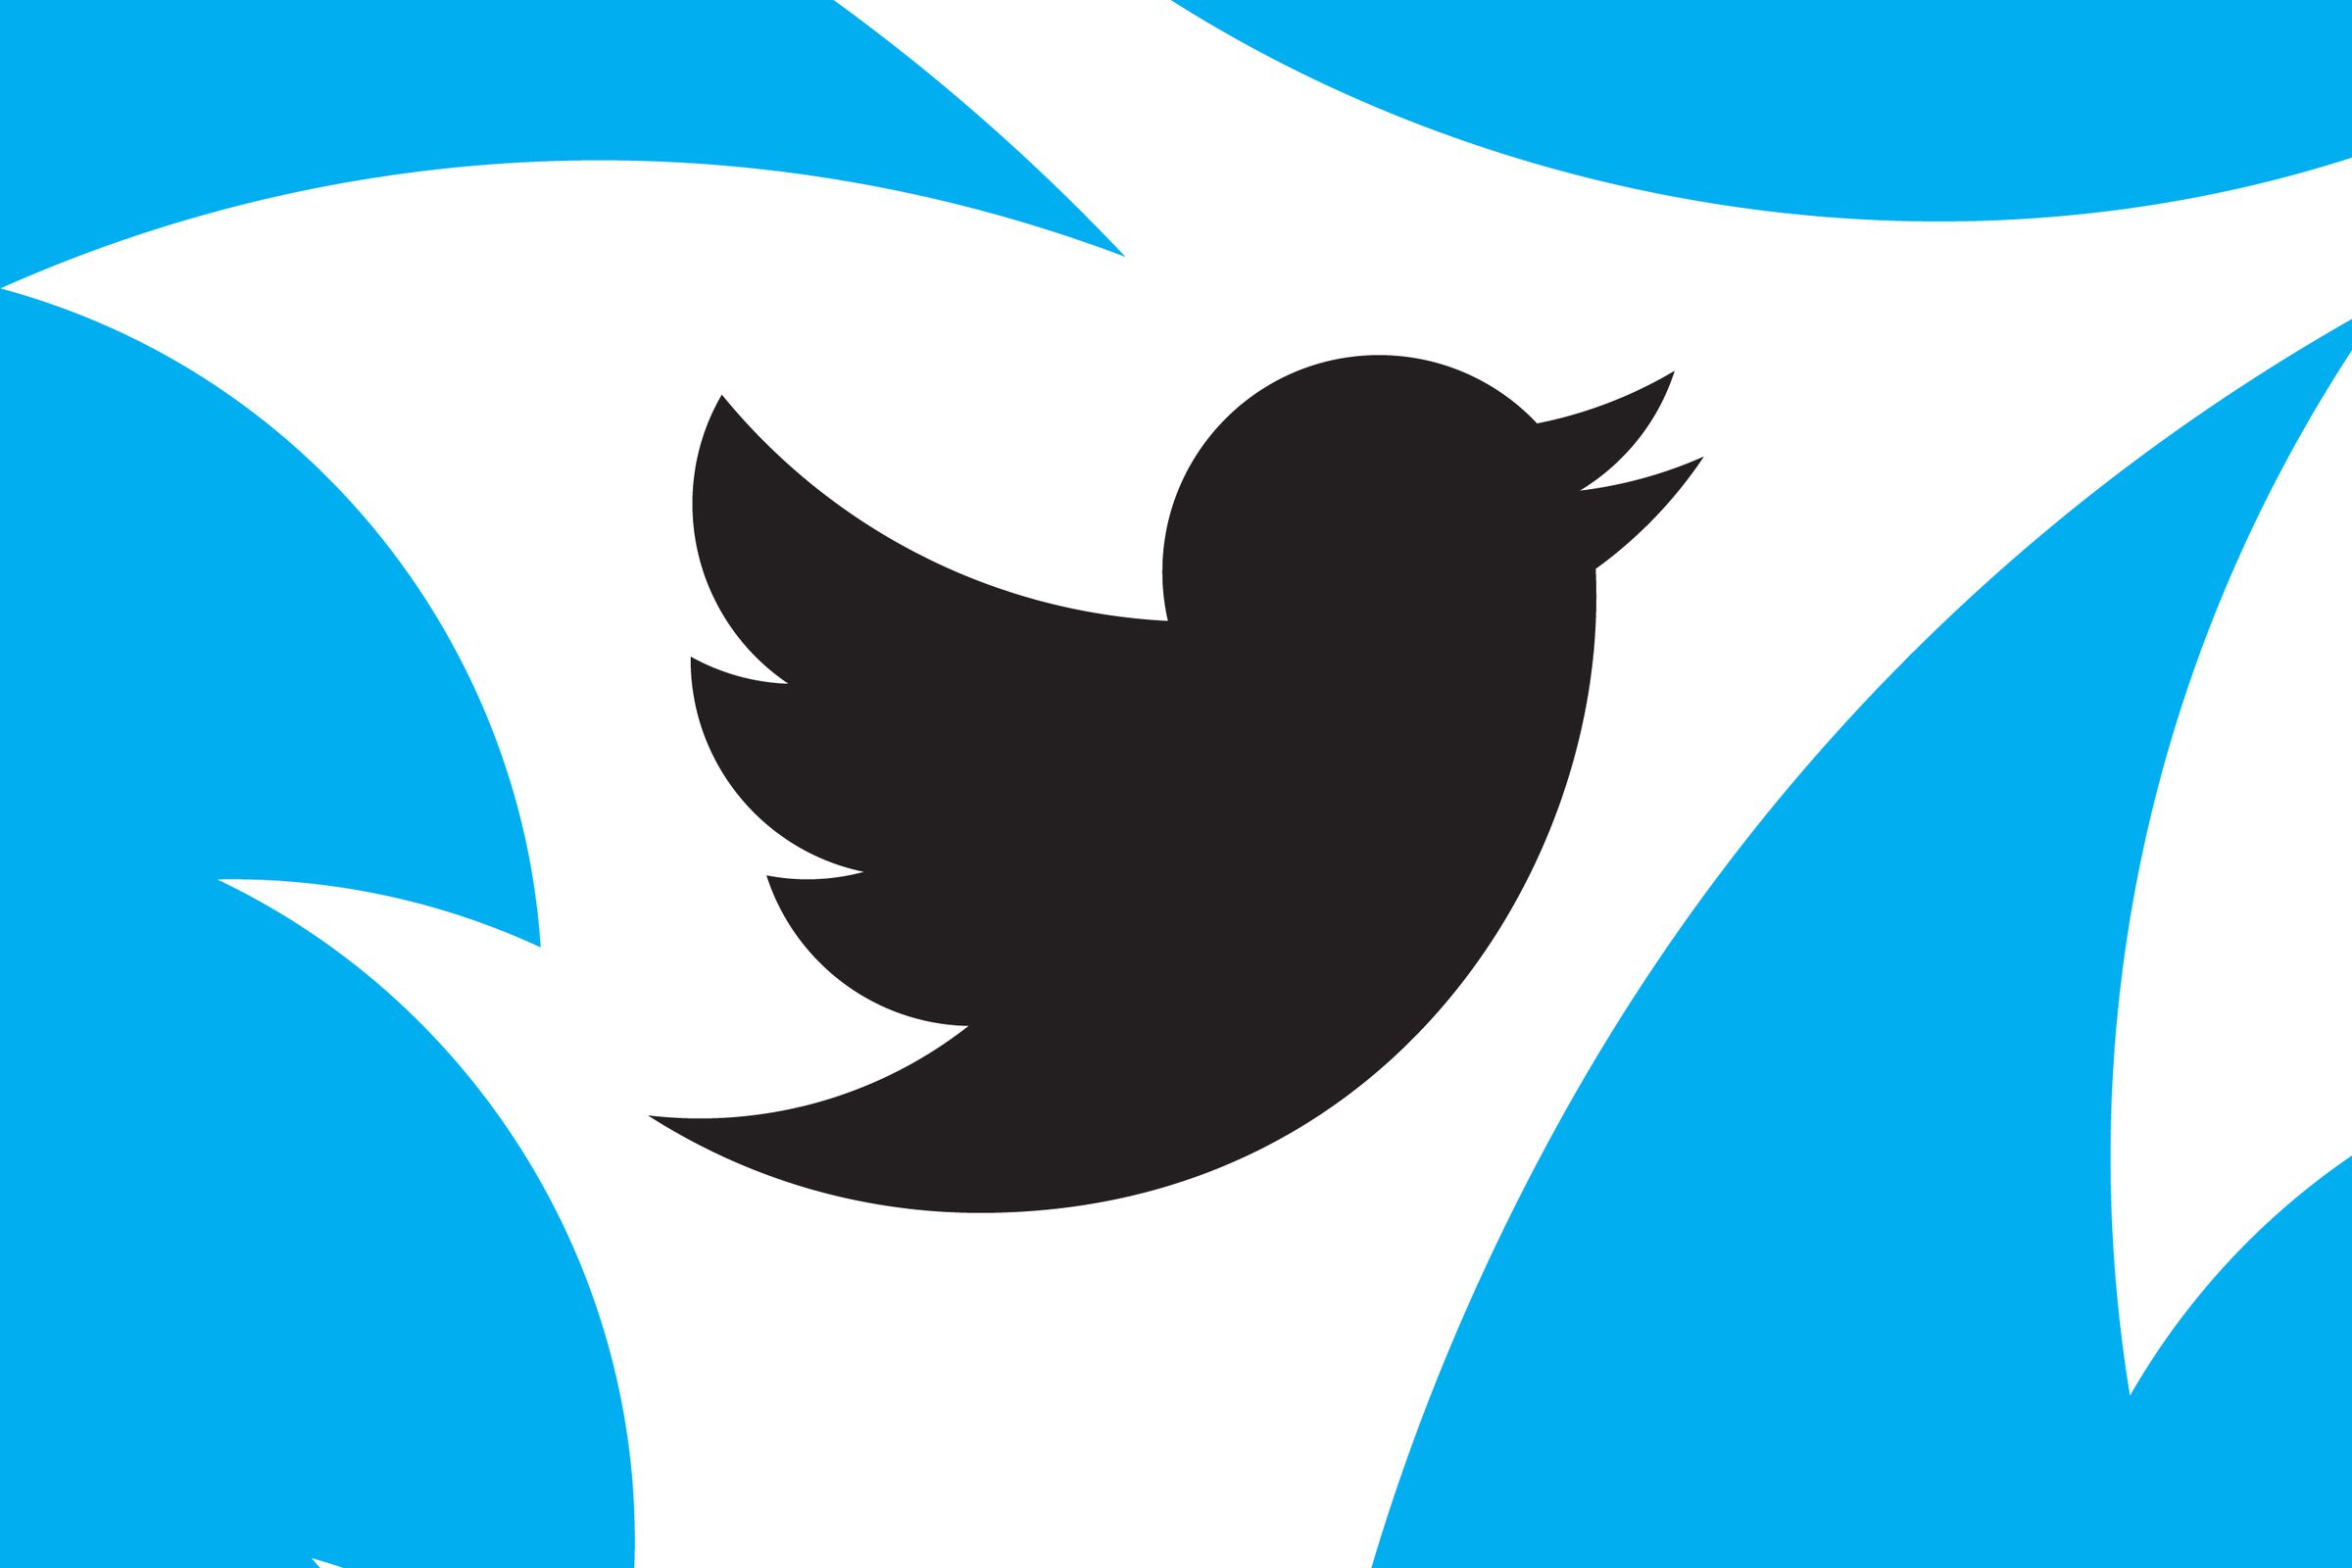 An illustration of Twitter’s logo.